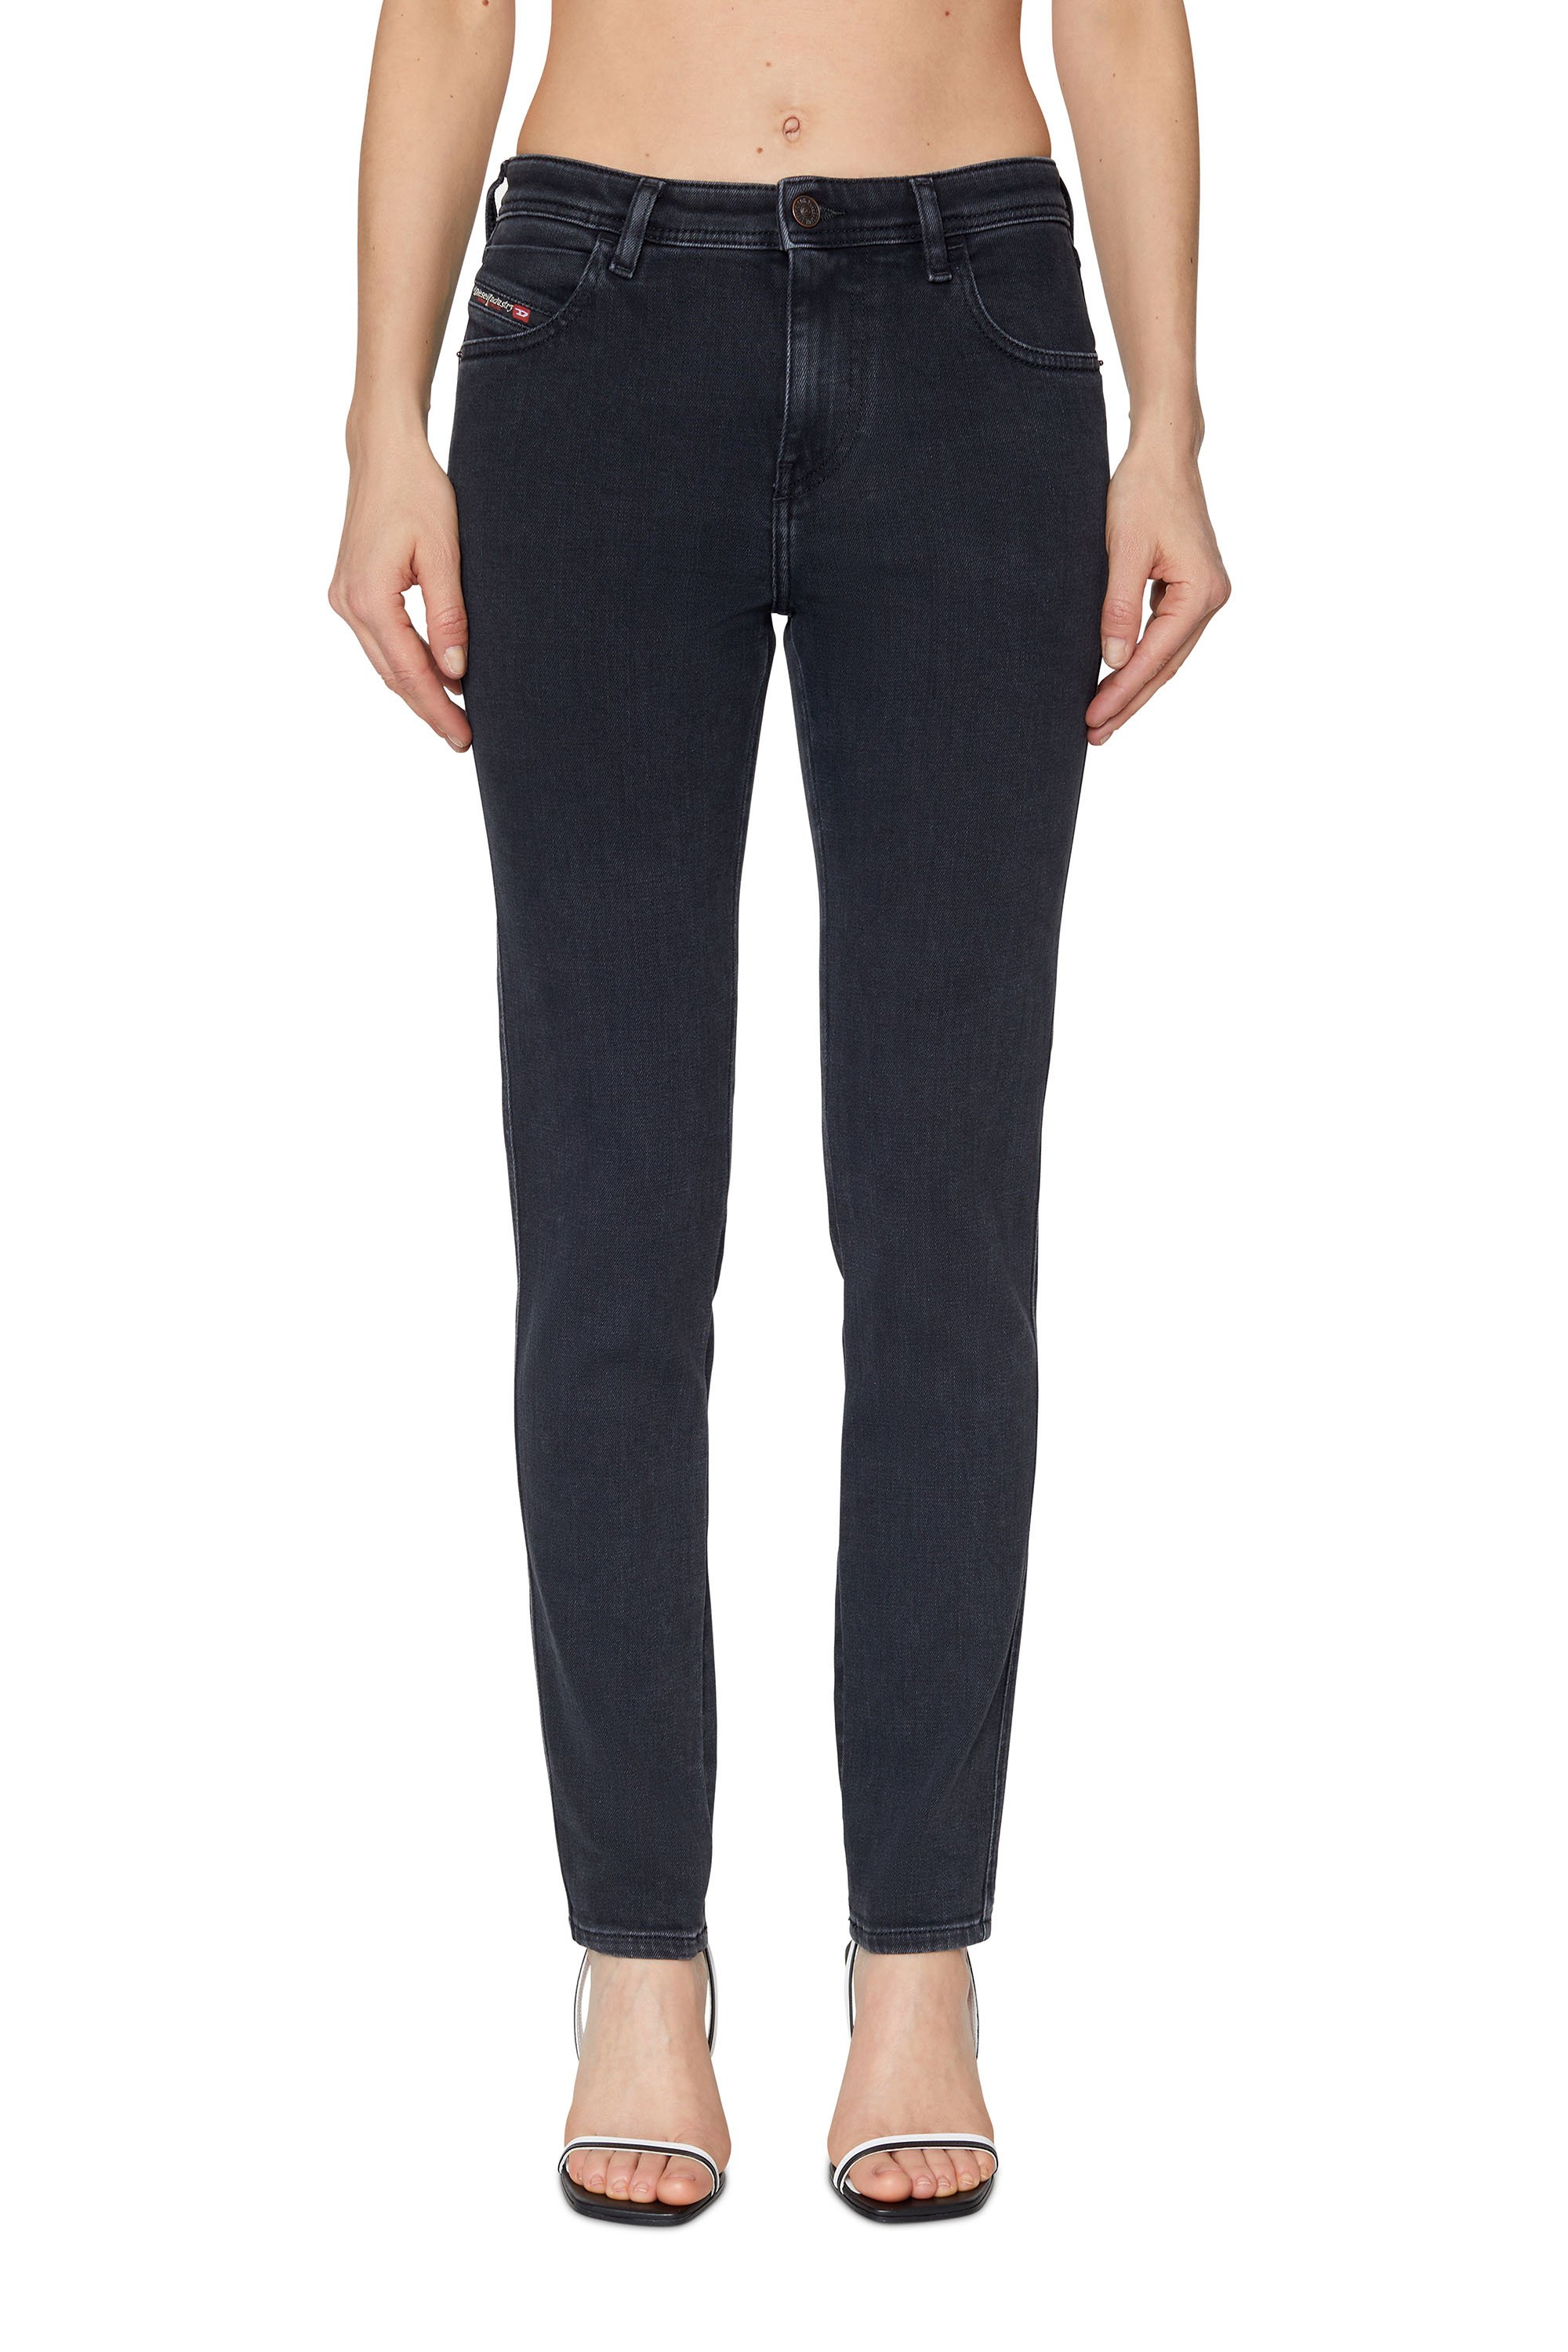 2015 BABHILA Z870G Skinny Jeans, Black/Dark grey - Jeans